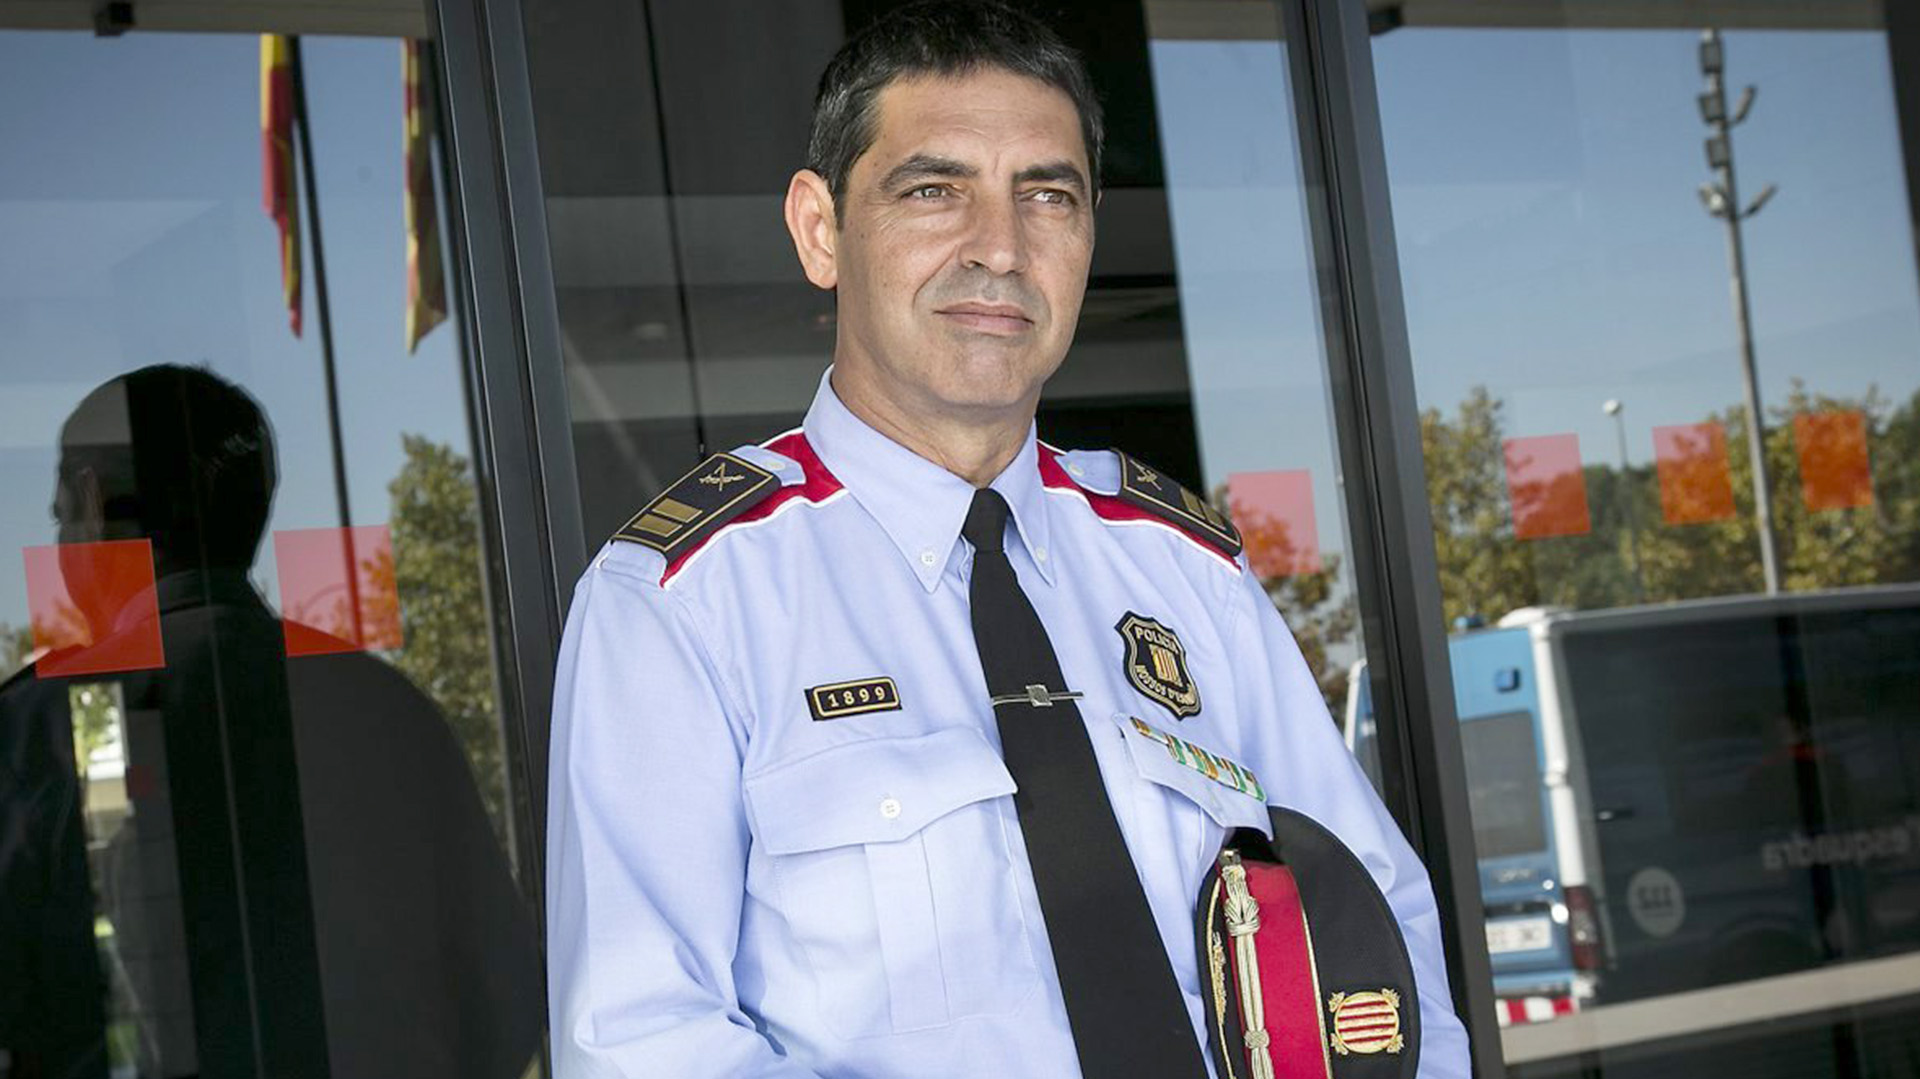 Justicia española investiga a jefe de policía catalana por "sedición"